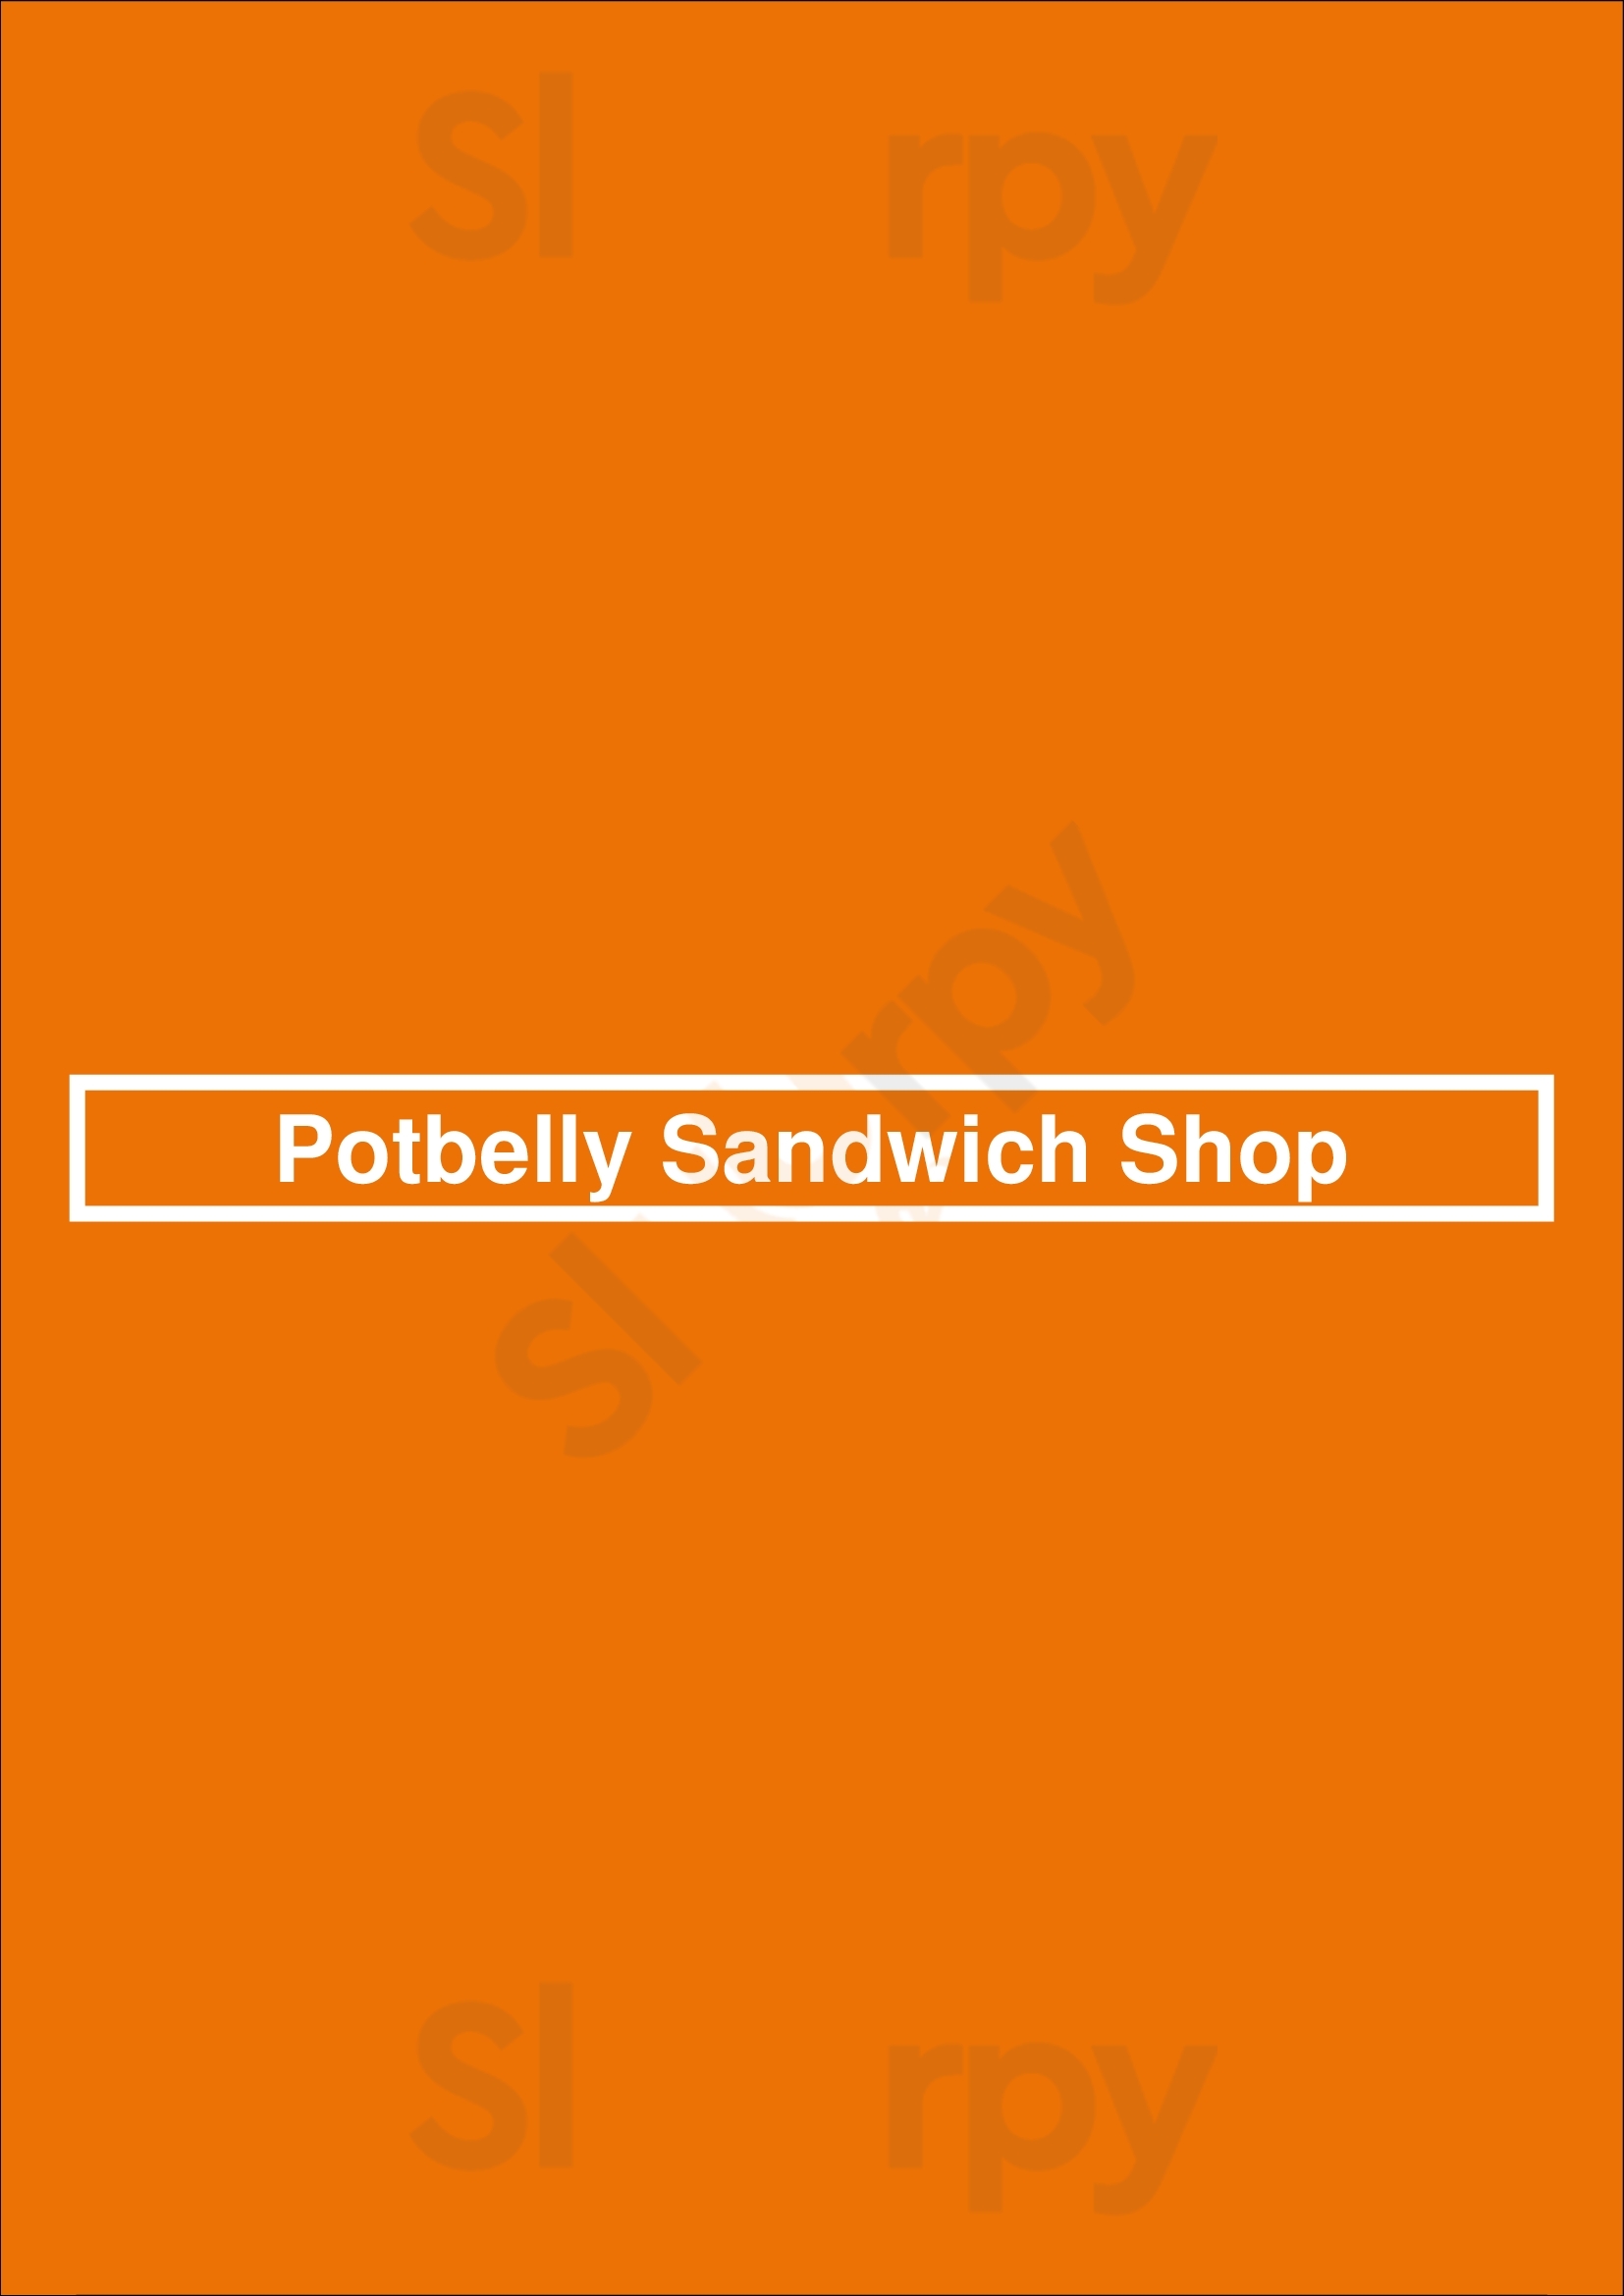 Potbelly Sandwich Shop Fort Worth Menu - 1